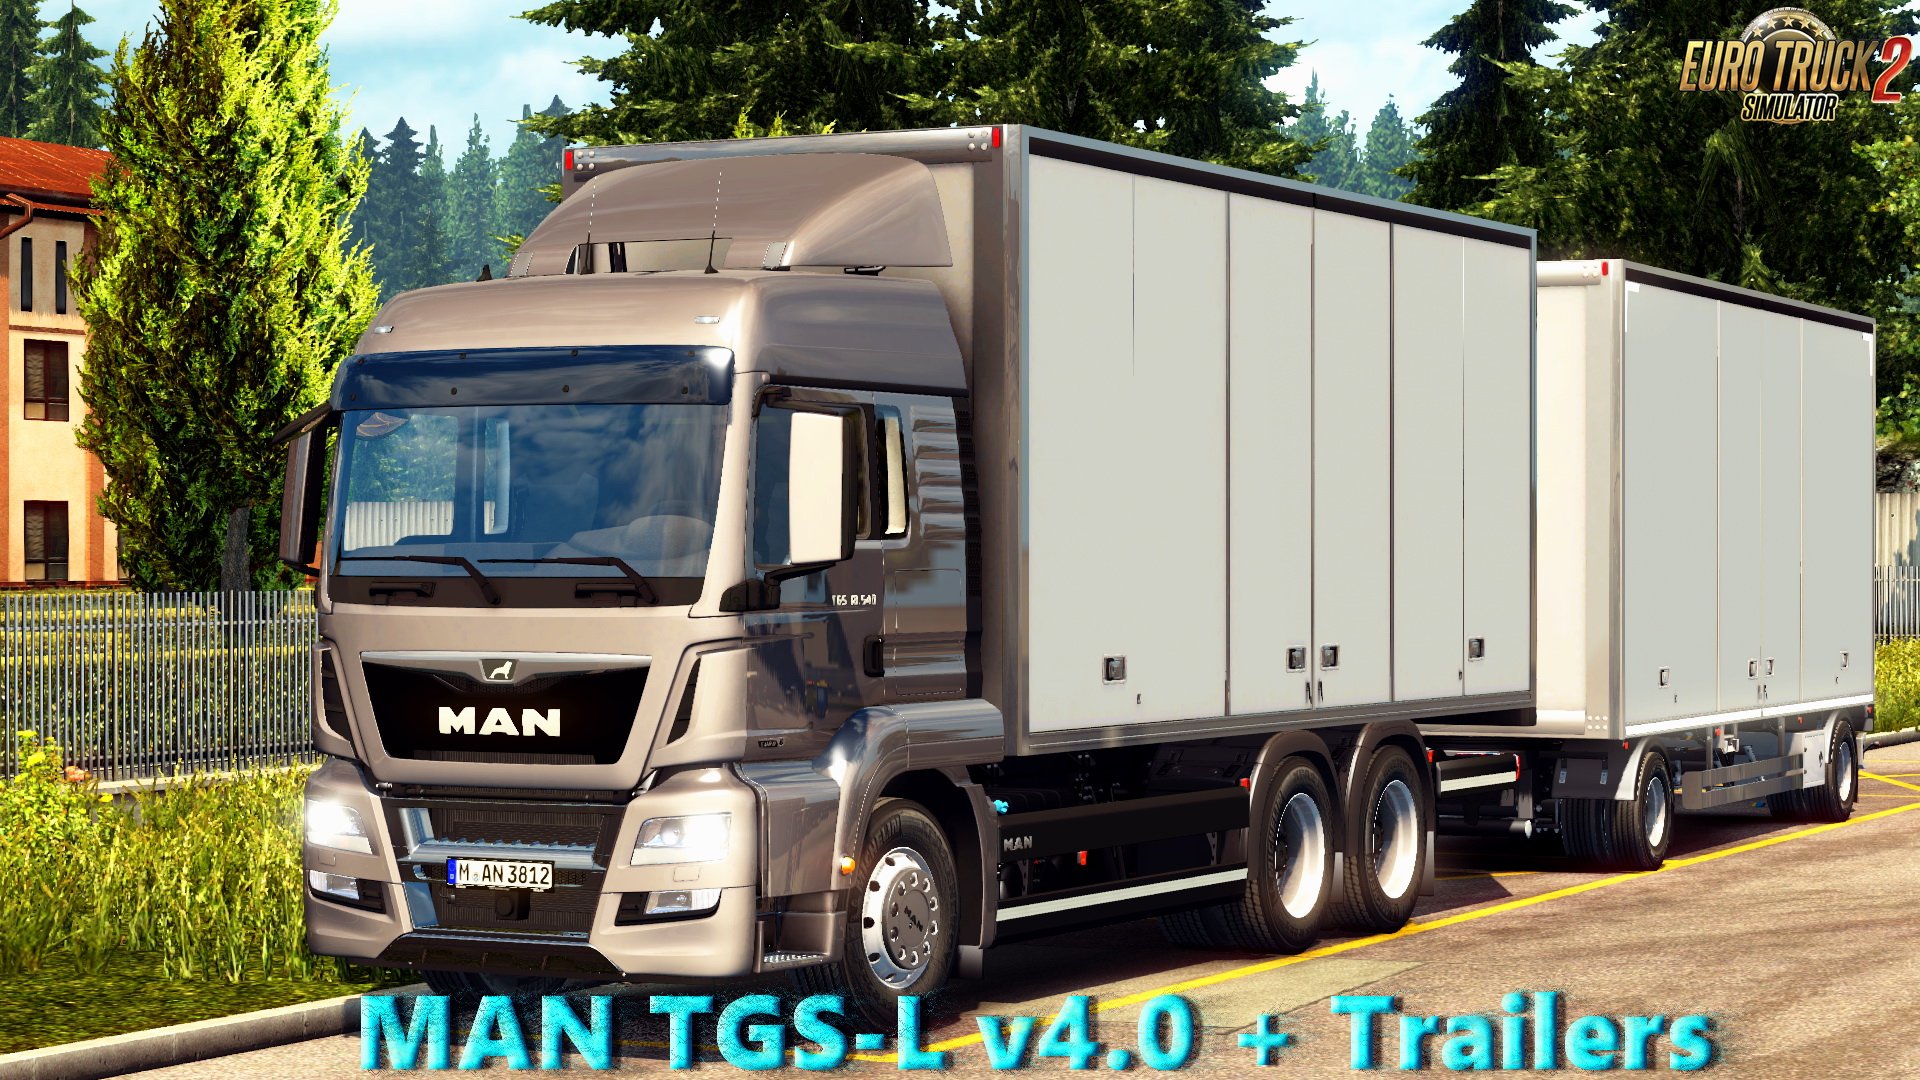 MAN TGS-L v4.0 + Trailers (1.26.x)